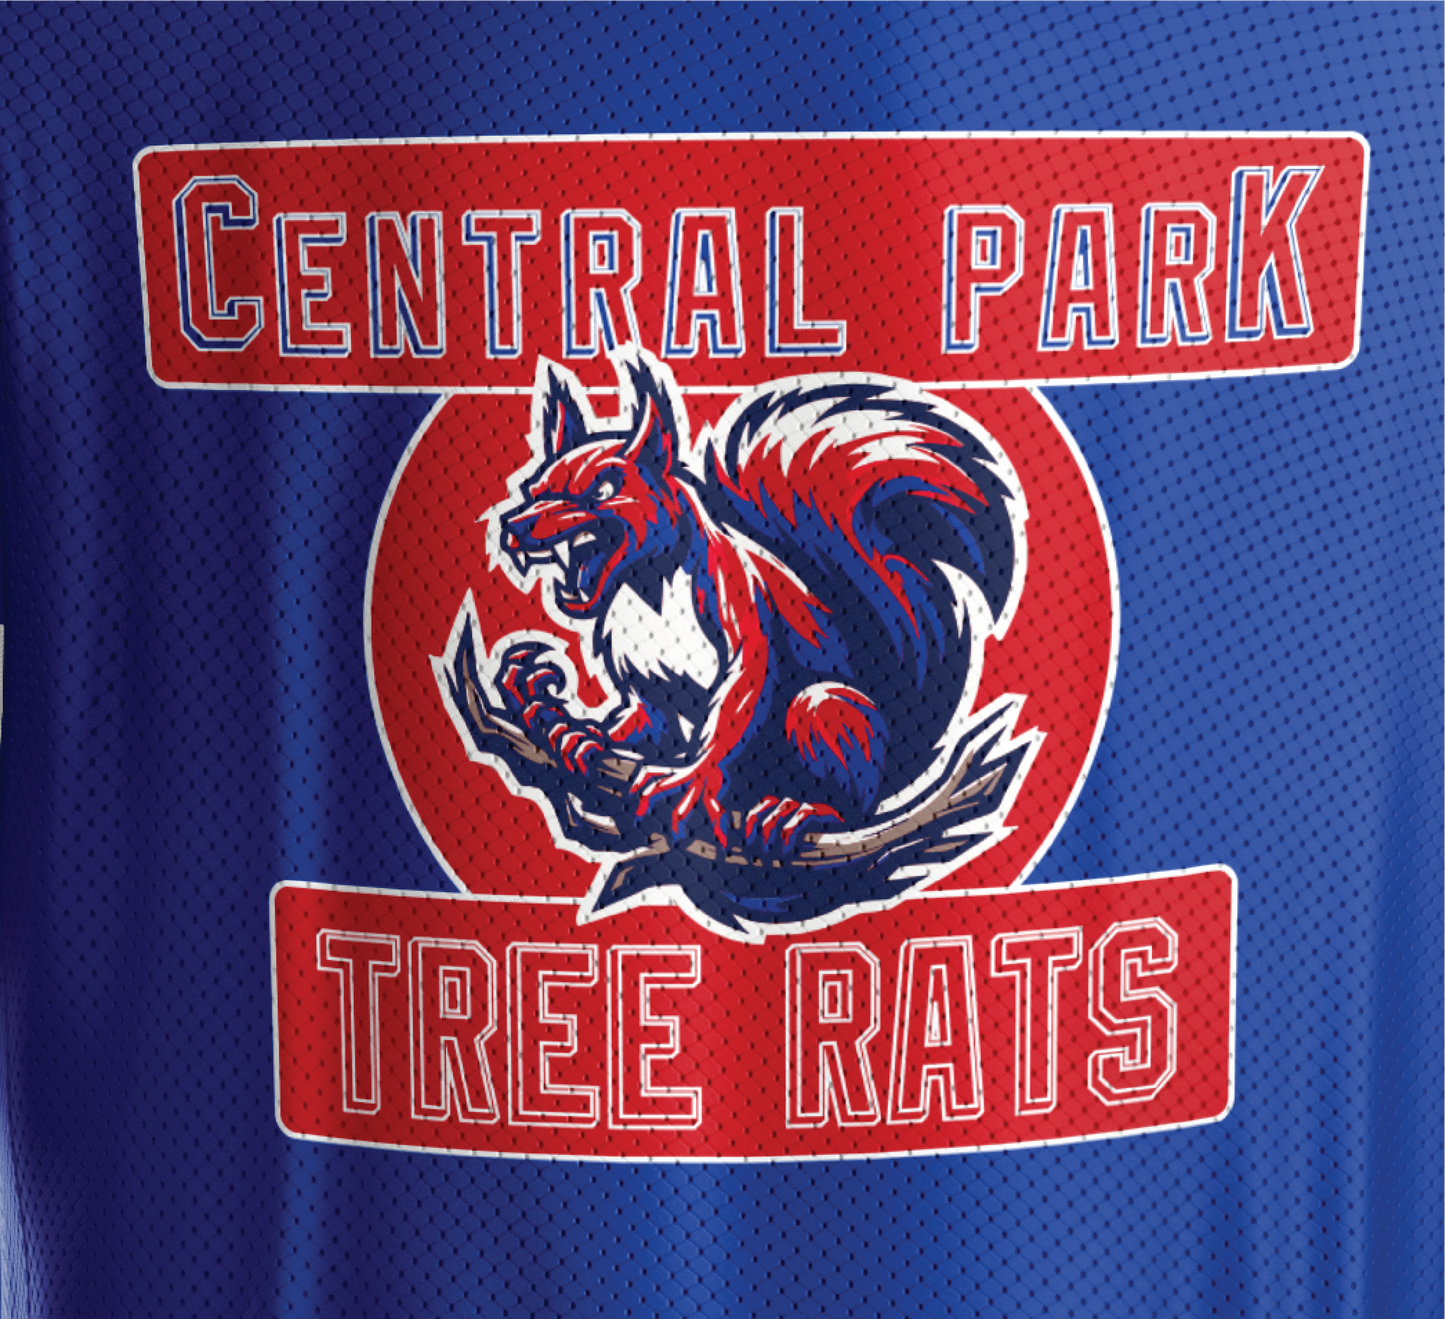 Tree Rats Ice Hockey Jersey